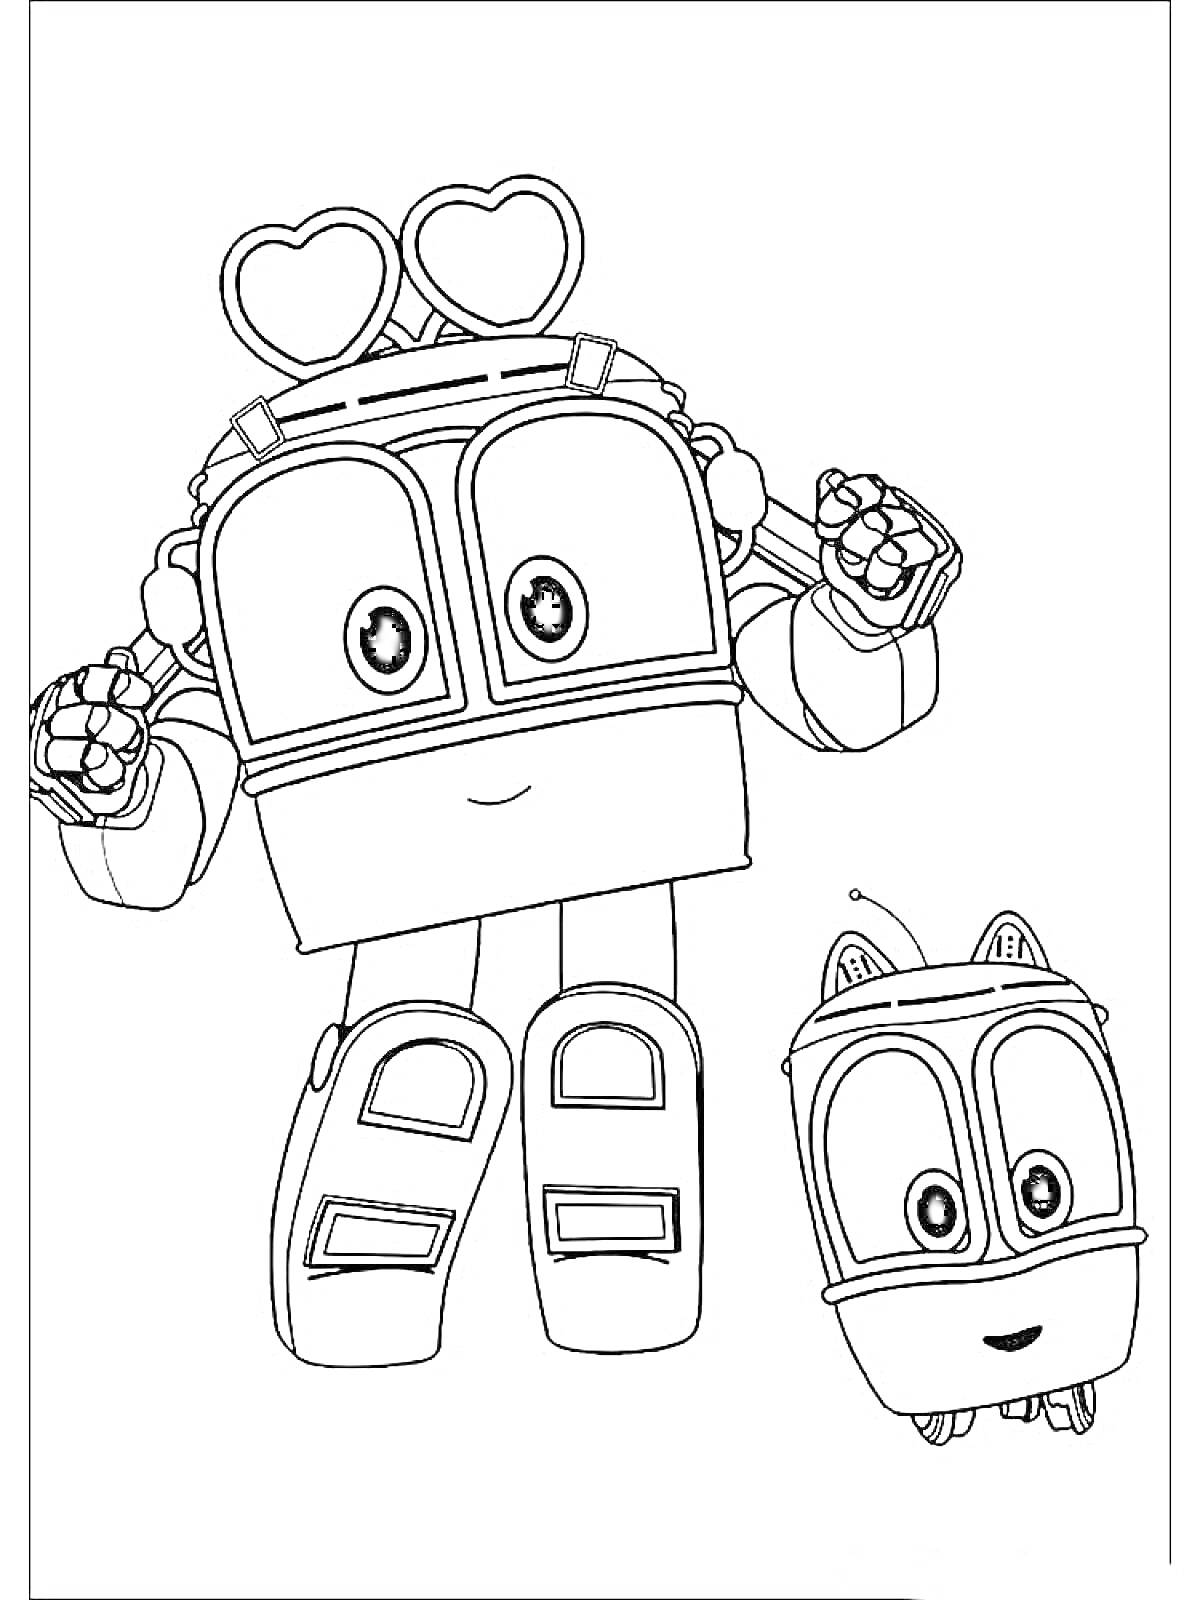 Раскраска Два робота с сердечками на голове и прорисовкой лицевых деталей